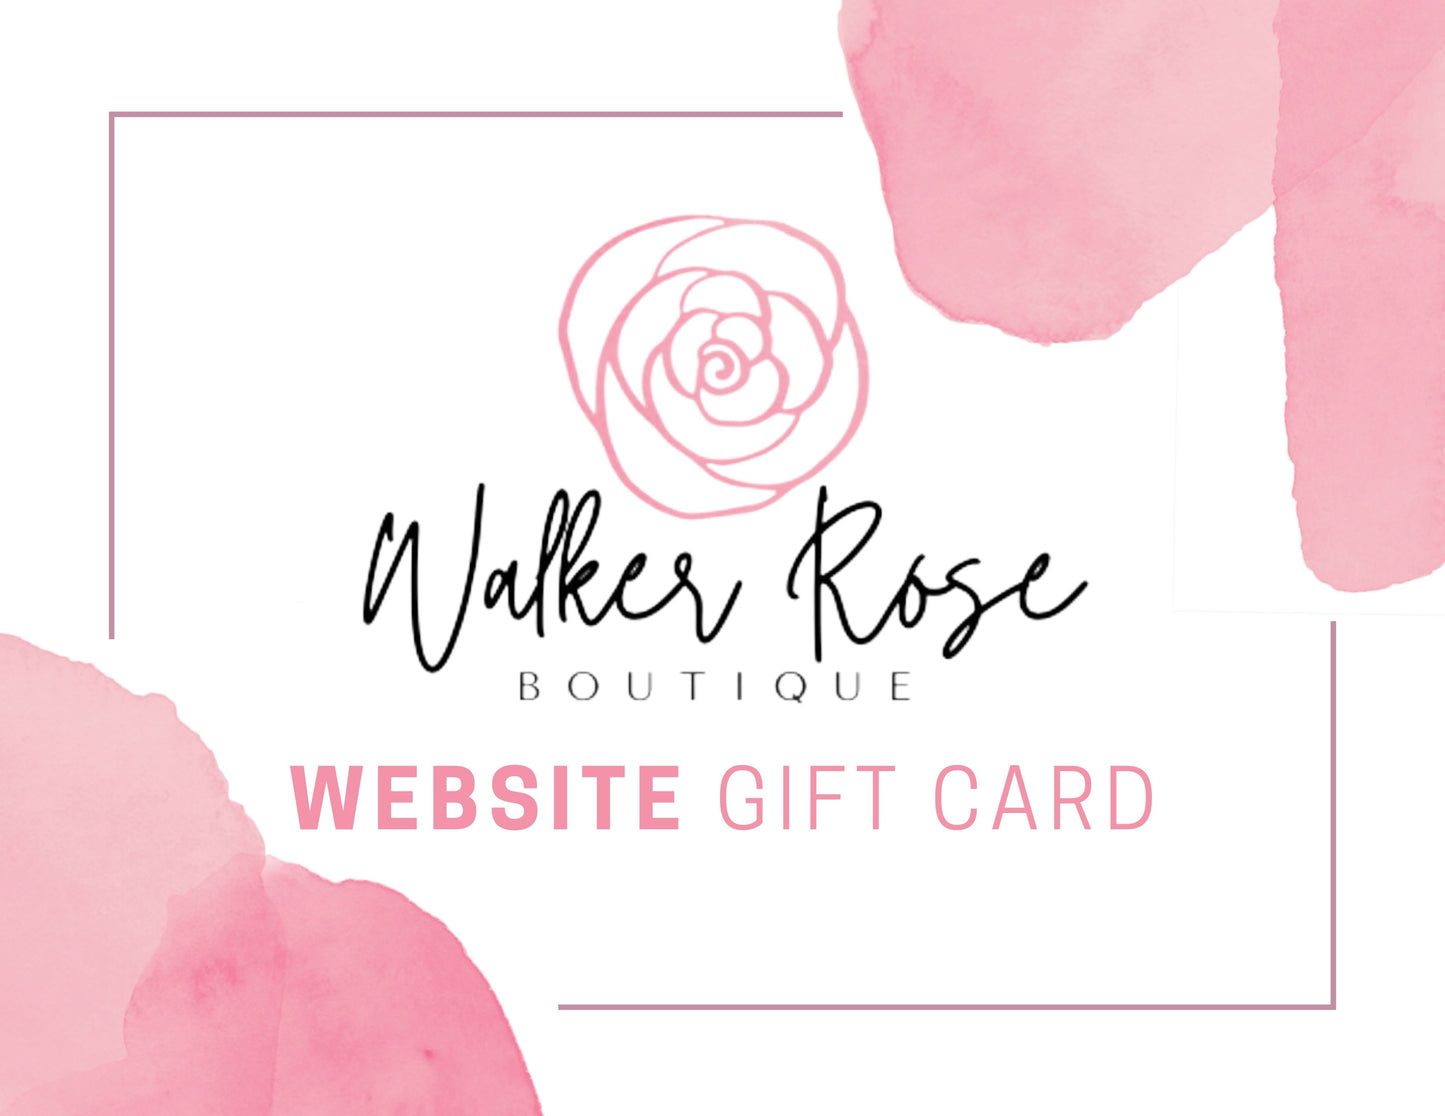 Walker Rose Website Gift Card